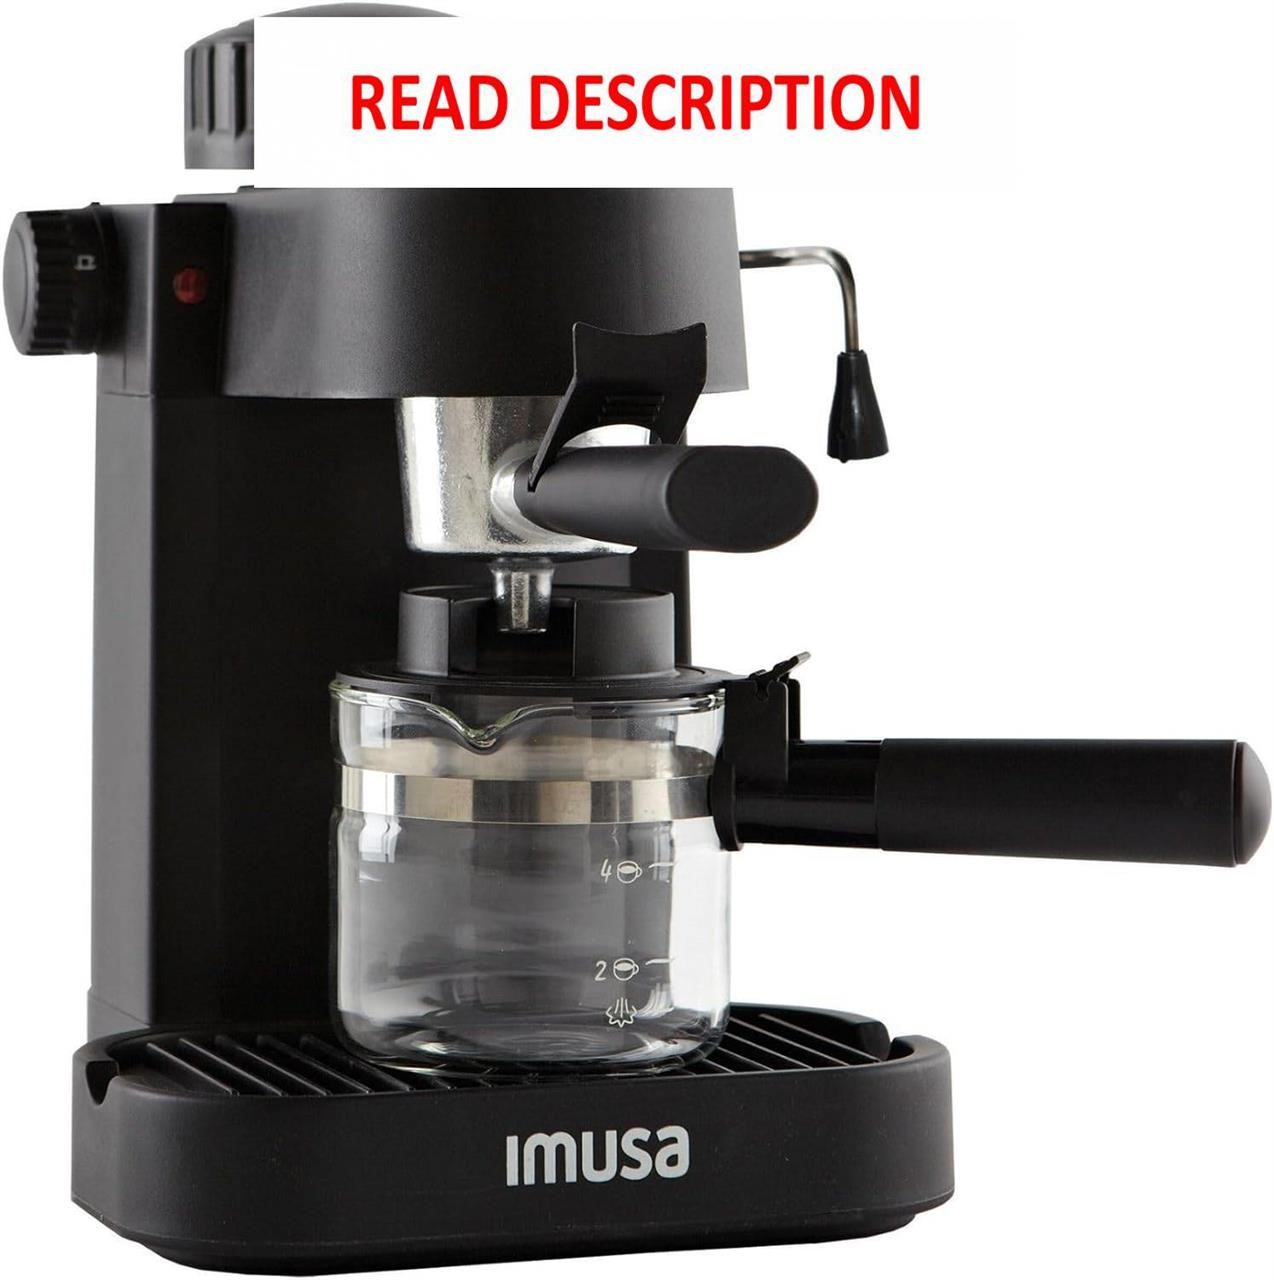 IMUSA 4 Cup Espresso/Cappuccino Maker  Black